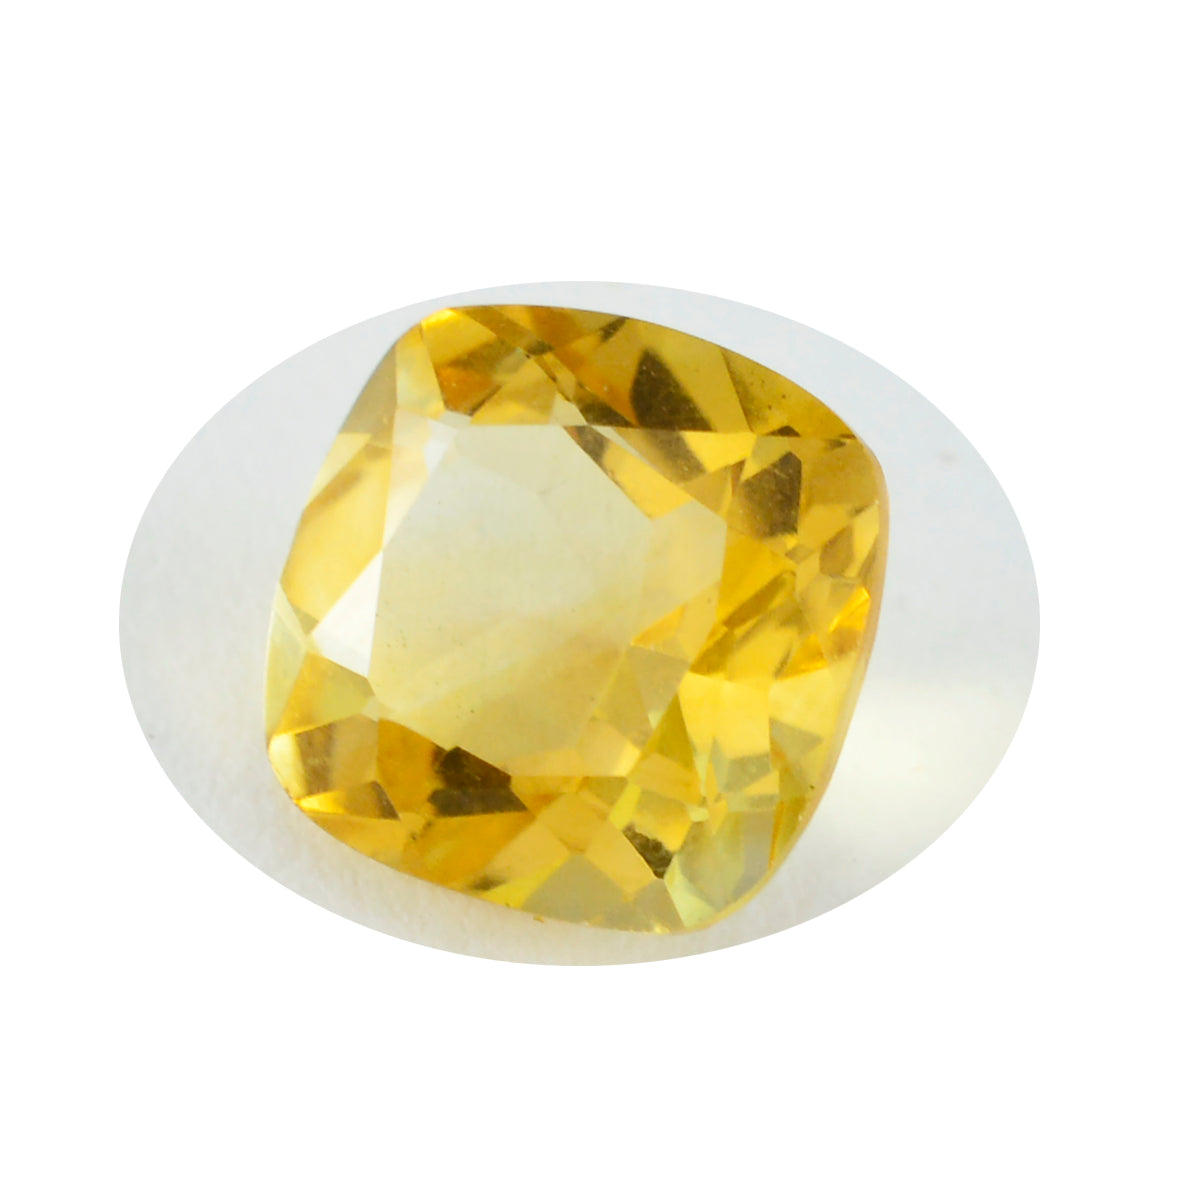 riyogems 1 шт. настоящий желтый цитрин ограненный 12x12 мм в форме подушки красивый качественный драгоценный камень